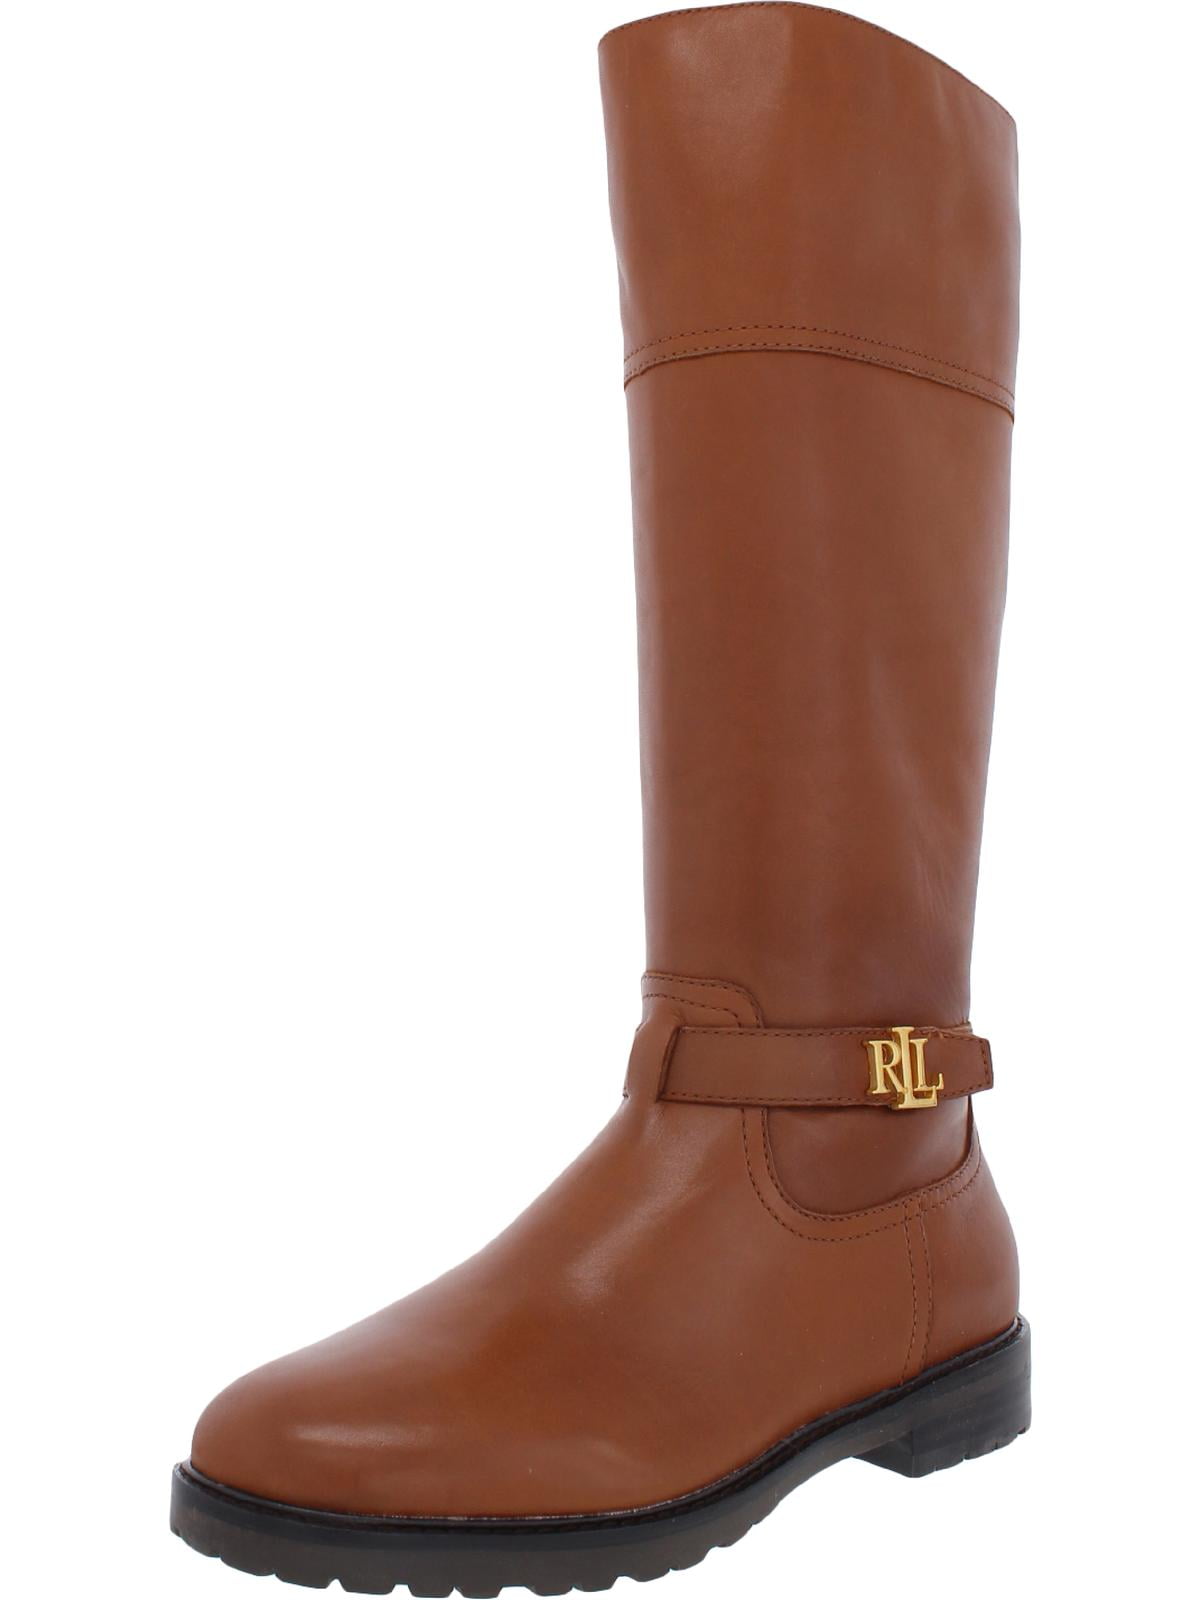 Lauren Ralph Lauren Womens Everly Leather Mid-Calf Boots Tan 8 Medium ...